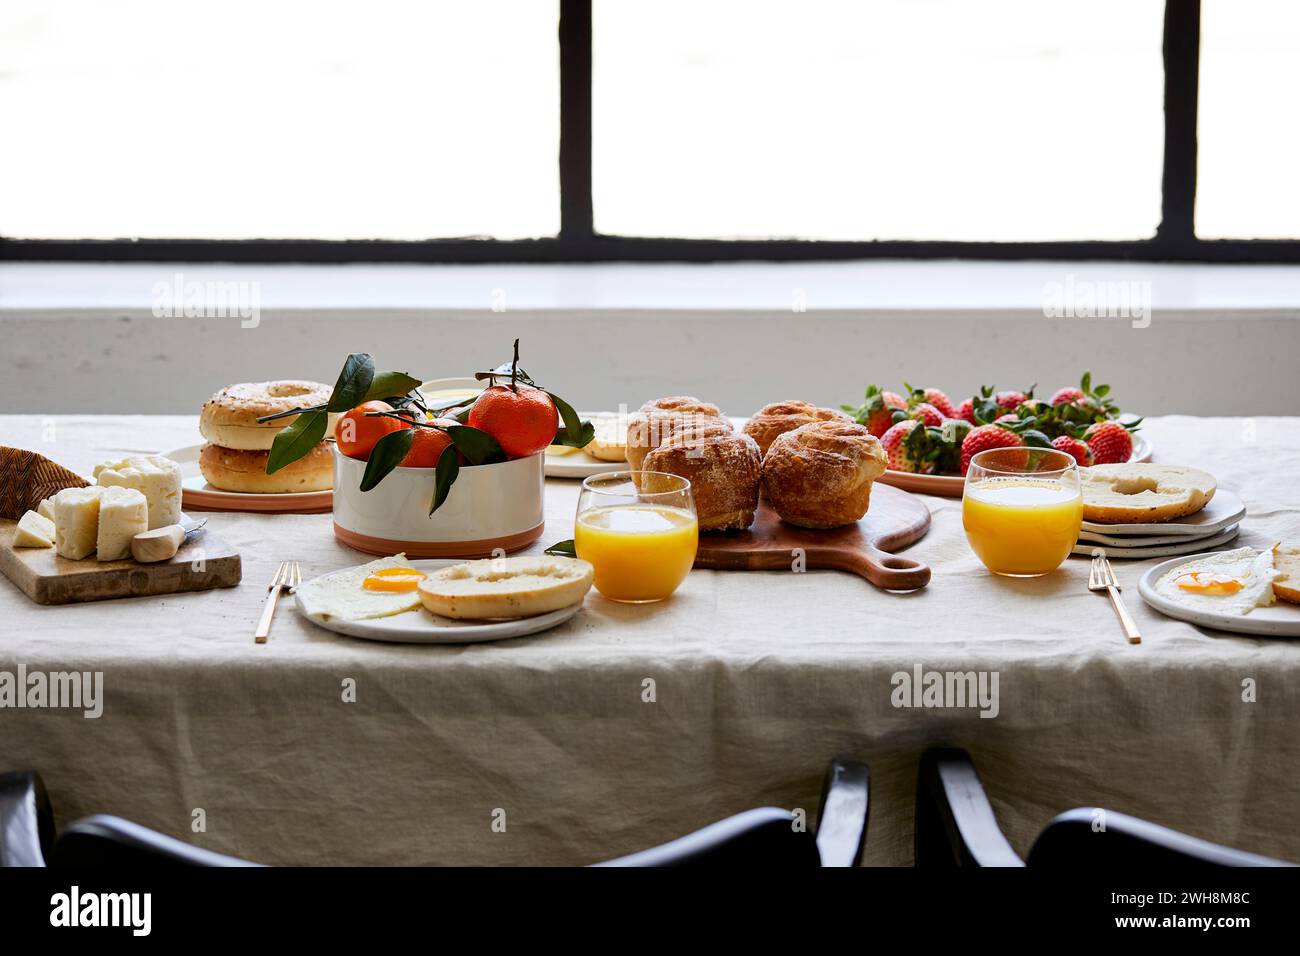 Frühstückstisch mit Gebäck, Orangensaft und Obst Stockfoto